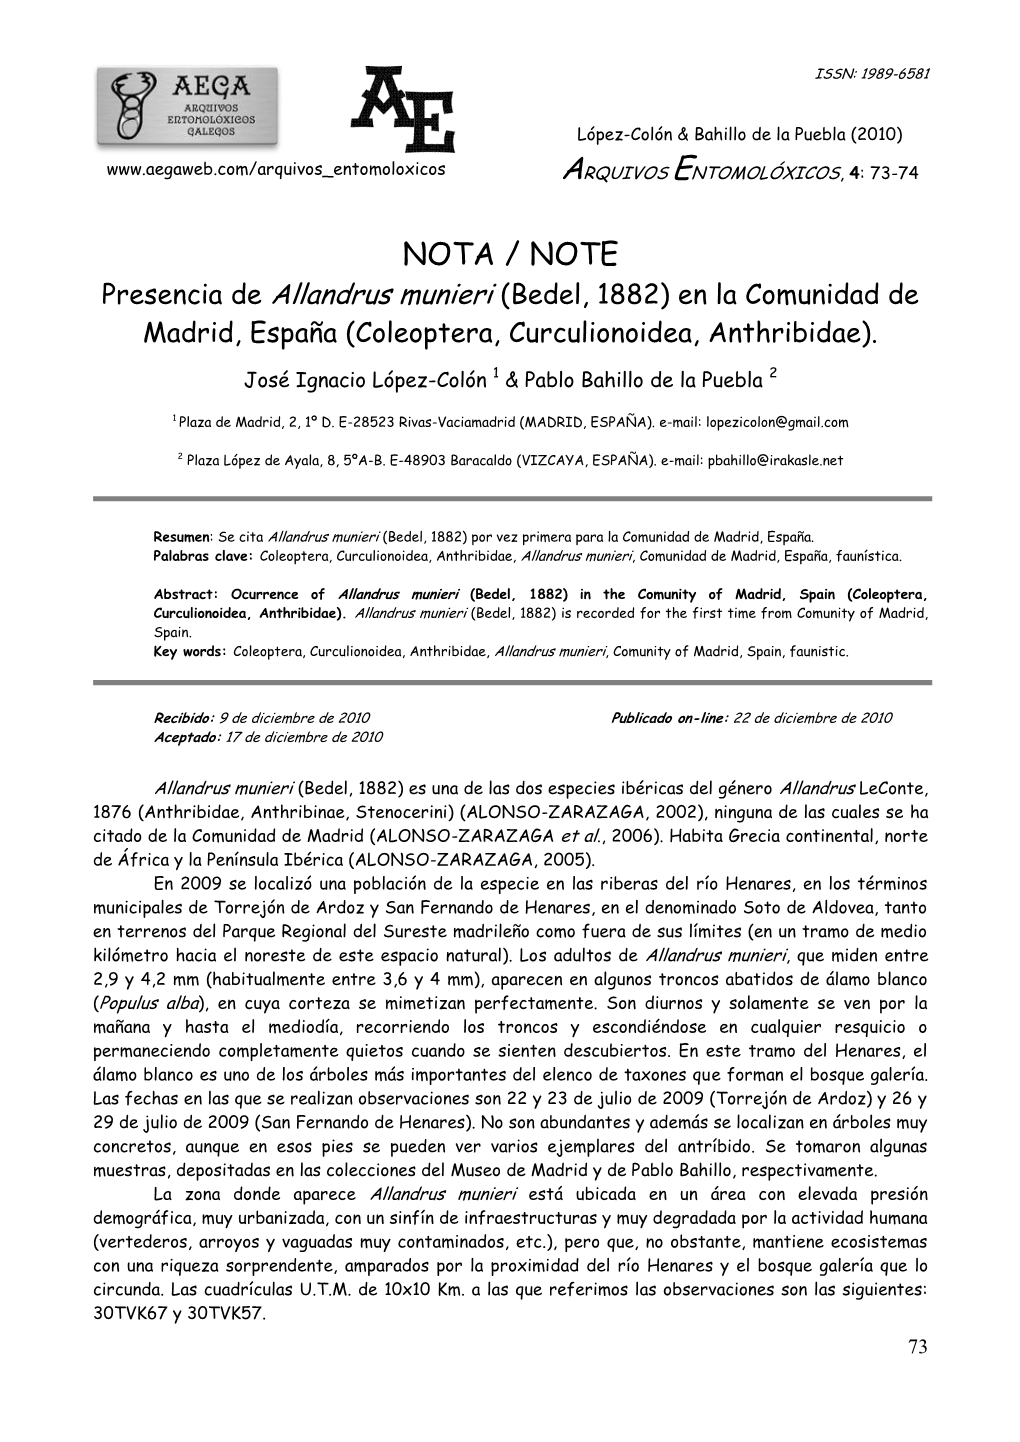 NOTA / NOTE Presencia De Allandrus Munieri (Bedel, 1882) En La Comunidad De Madrid, España (Coleoptera, Curculionoidea, Anthribidae)